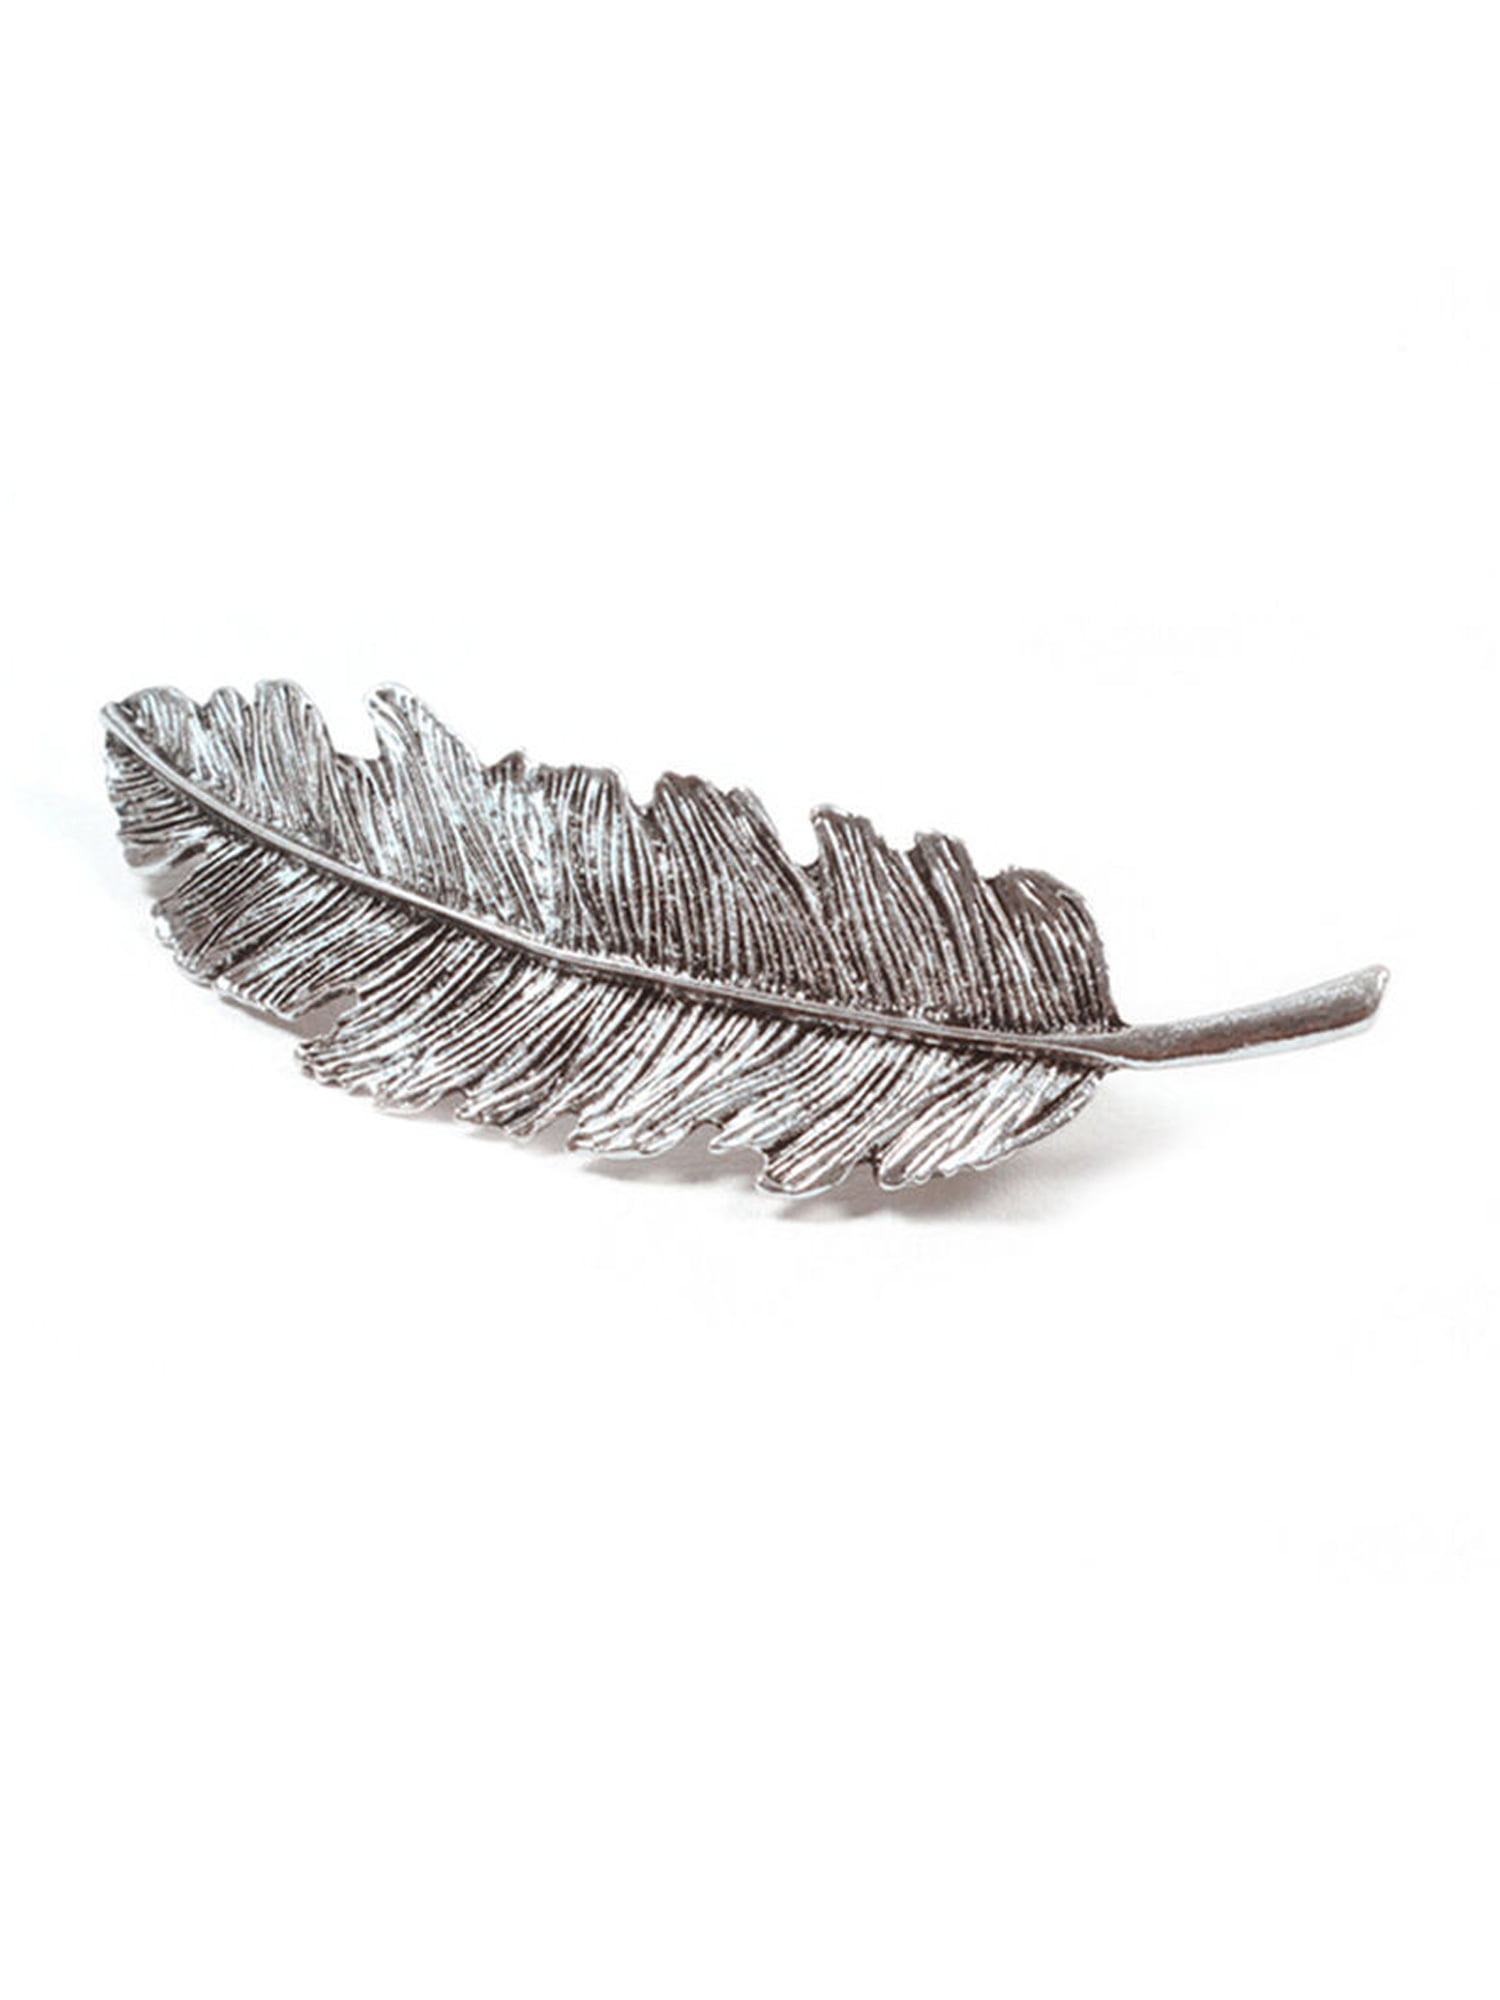 Fashion Women Leaf Feather Hair Clip Hairpin Barrette Bobby Pin Hair Accessories